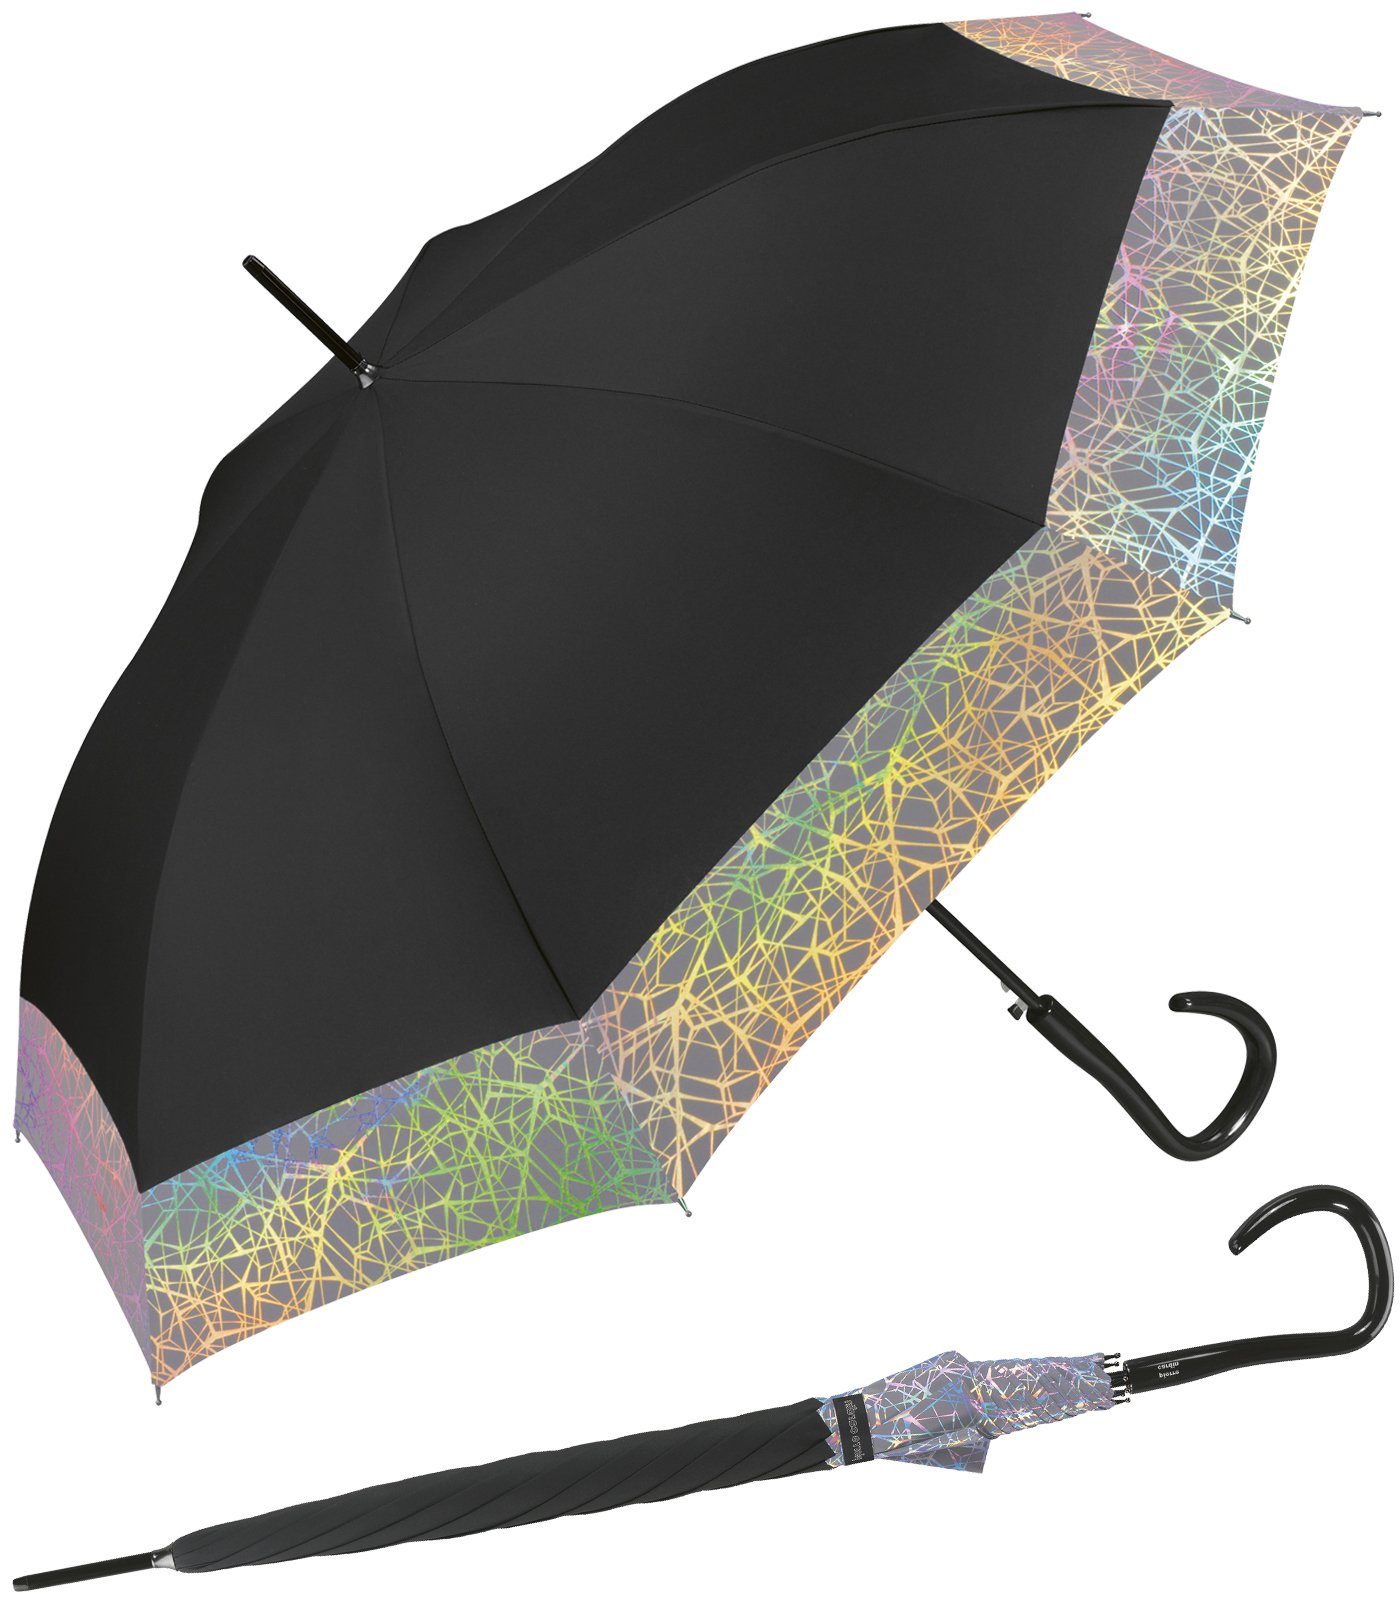 Pierre Cardin Langregenschirm großer Damen-Regenschirm mit Auf-Automatik, schimmernde Perlmut-Effekte für den ganz großen Auftritt Borte